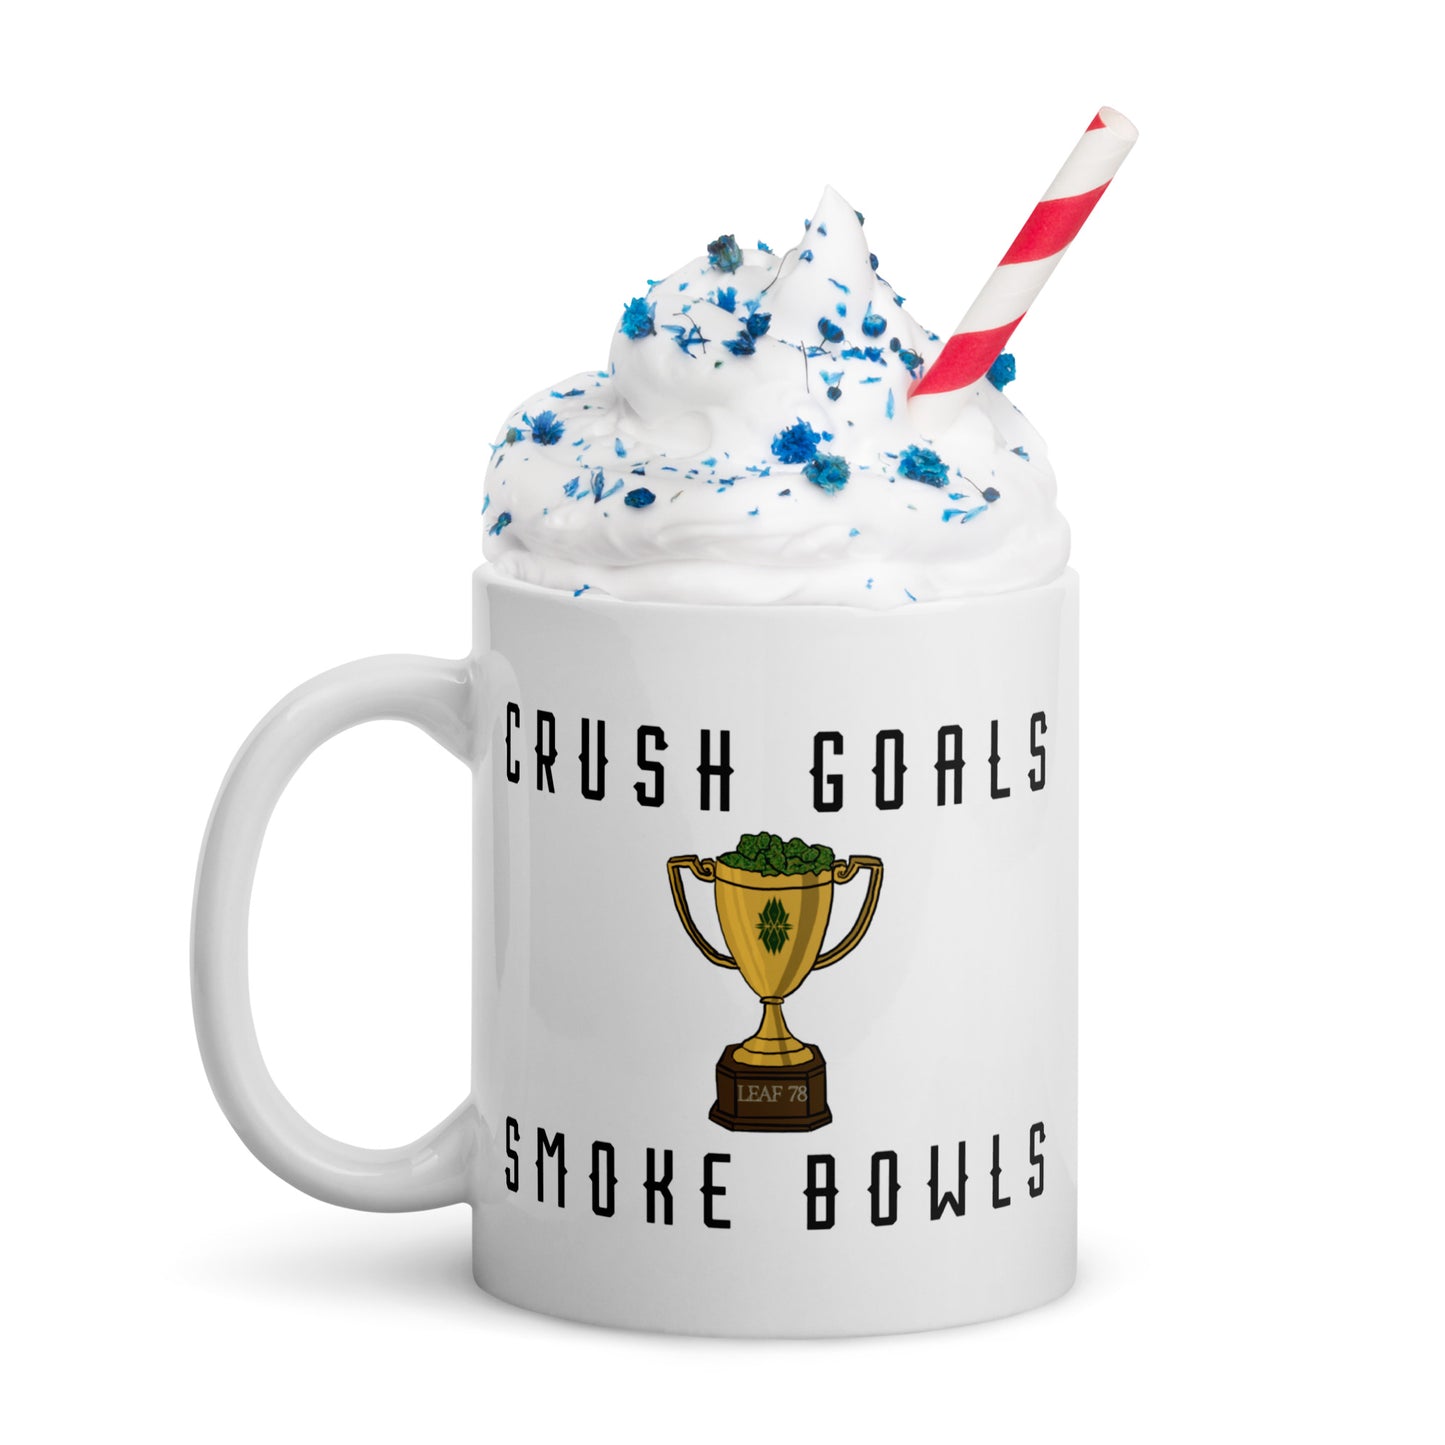 Crush Goals Smoke Bowls White glossy mug